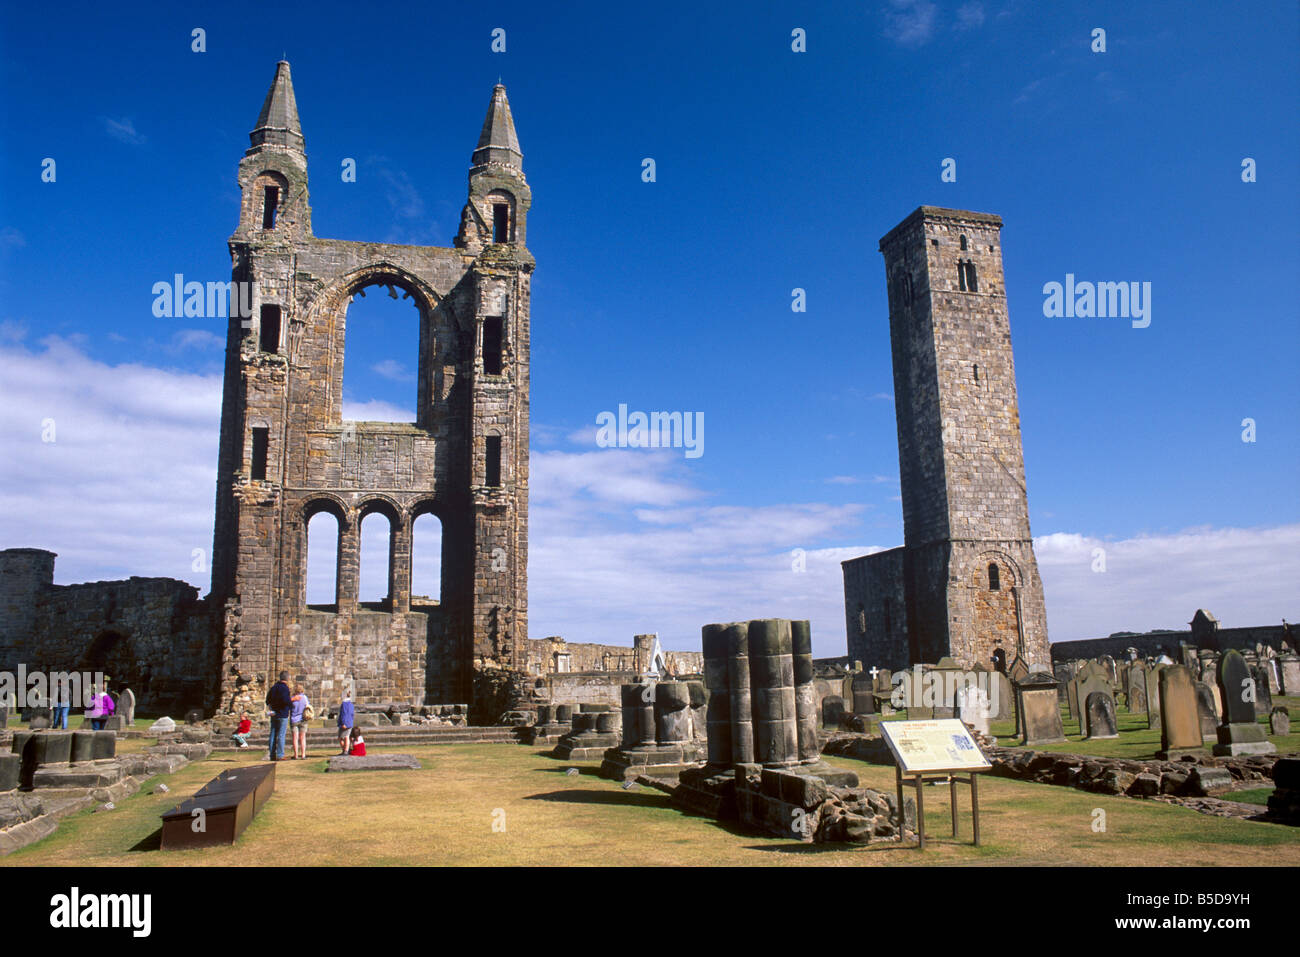 Grande finestra orientale e San regola la torre sulla destra, St Andrews cattedrale risalente al XIV secolo, St. Andrews Fife, Scozia Foto Stock